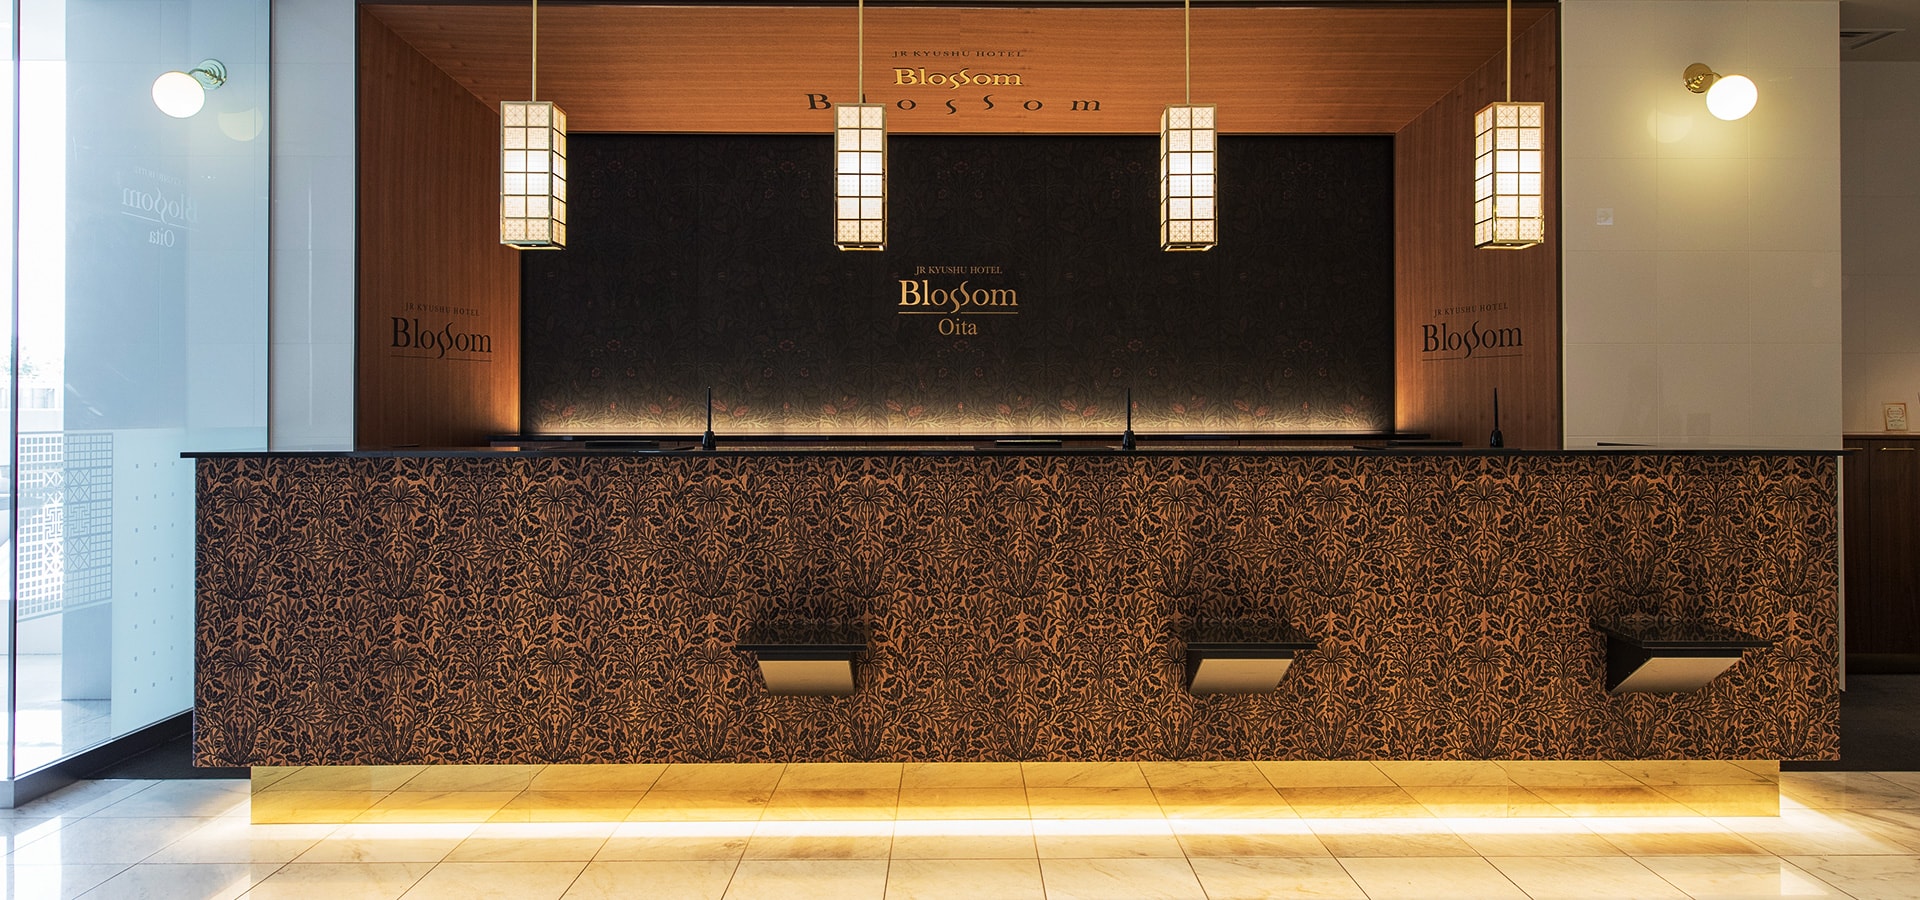 JR九州飯店 Blossom大分